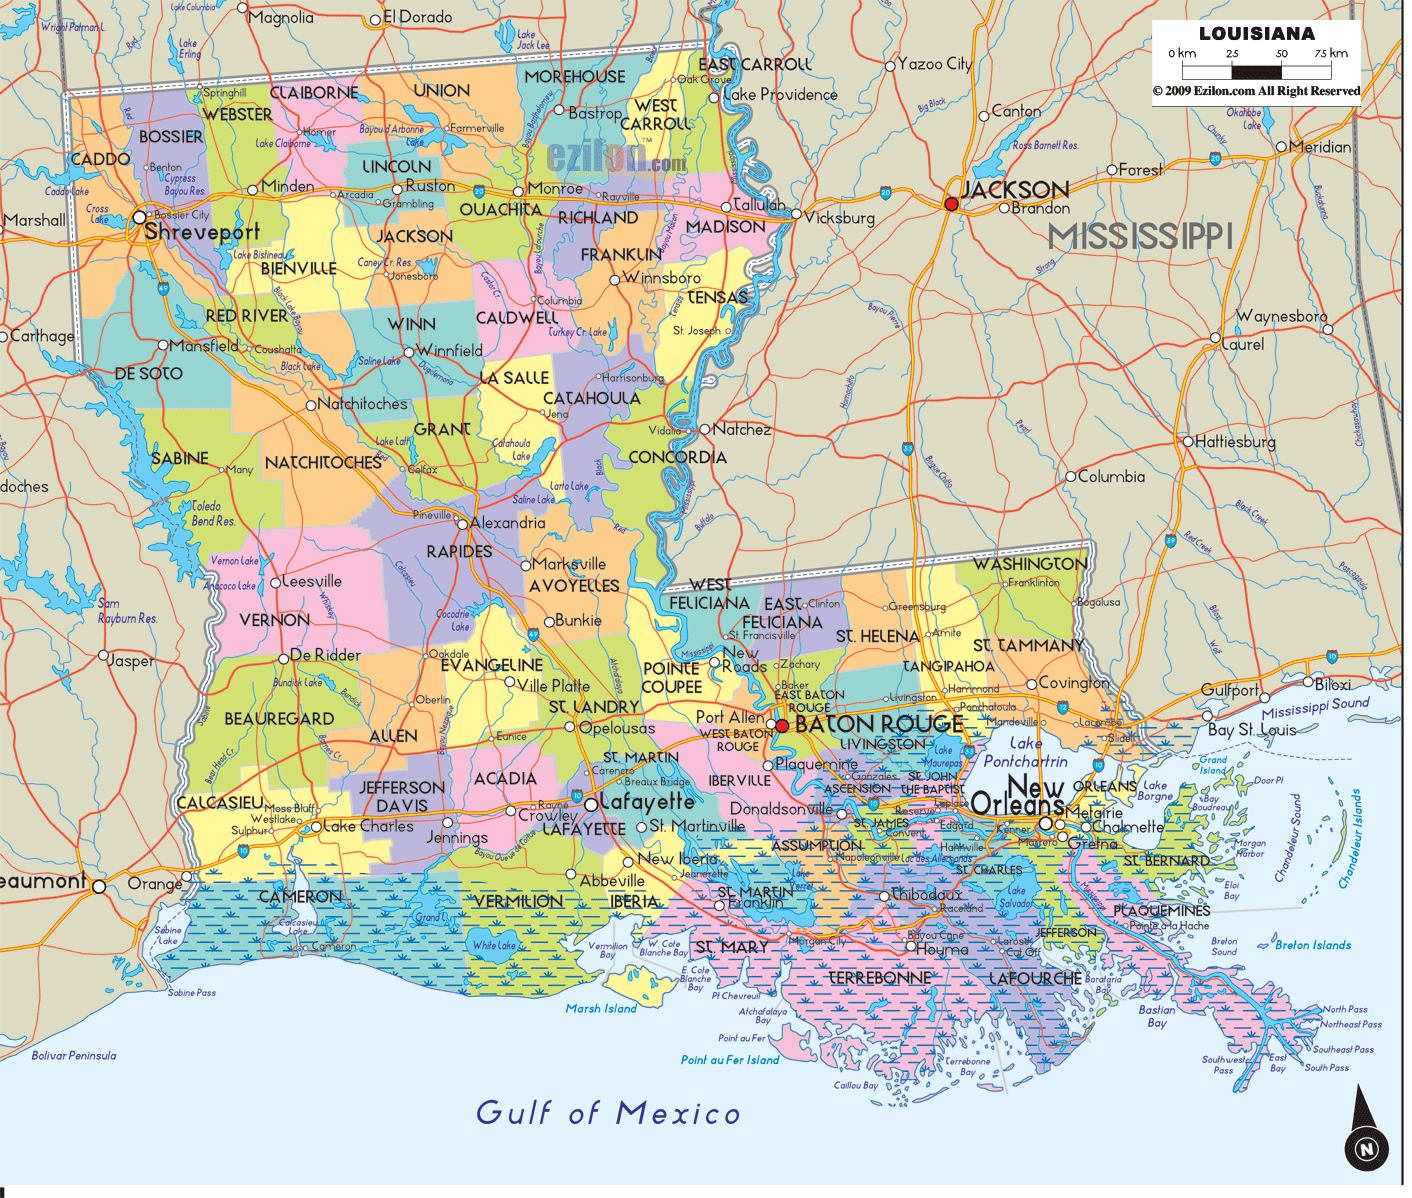 louisiana-county-map